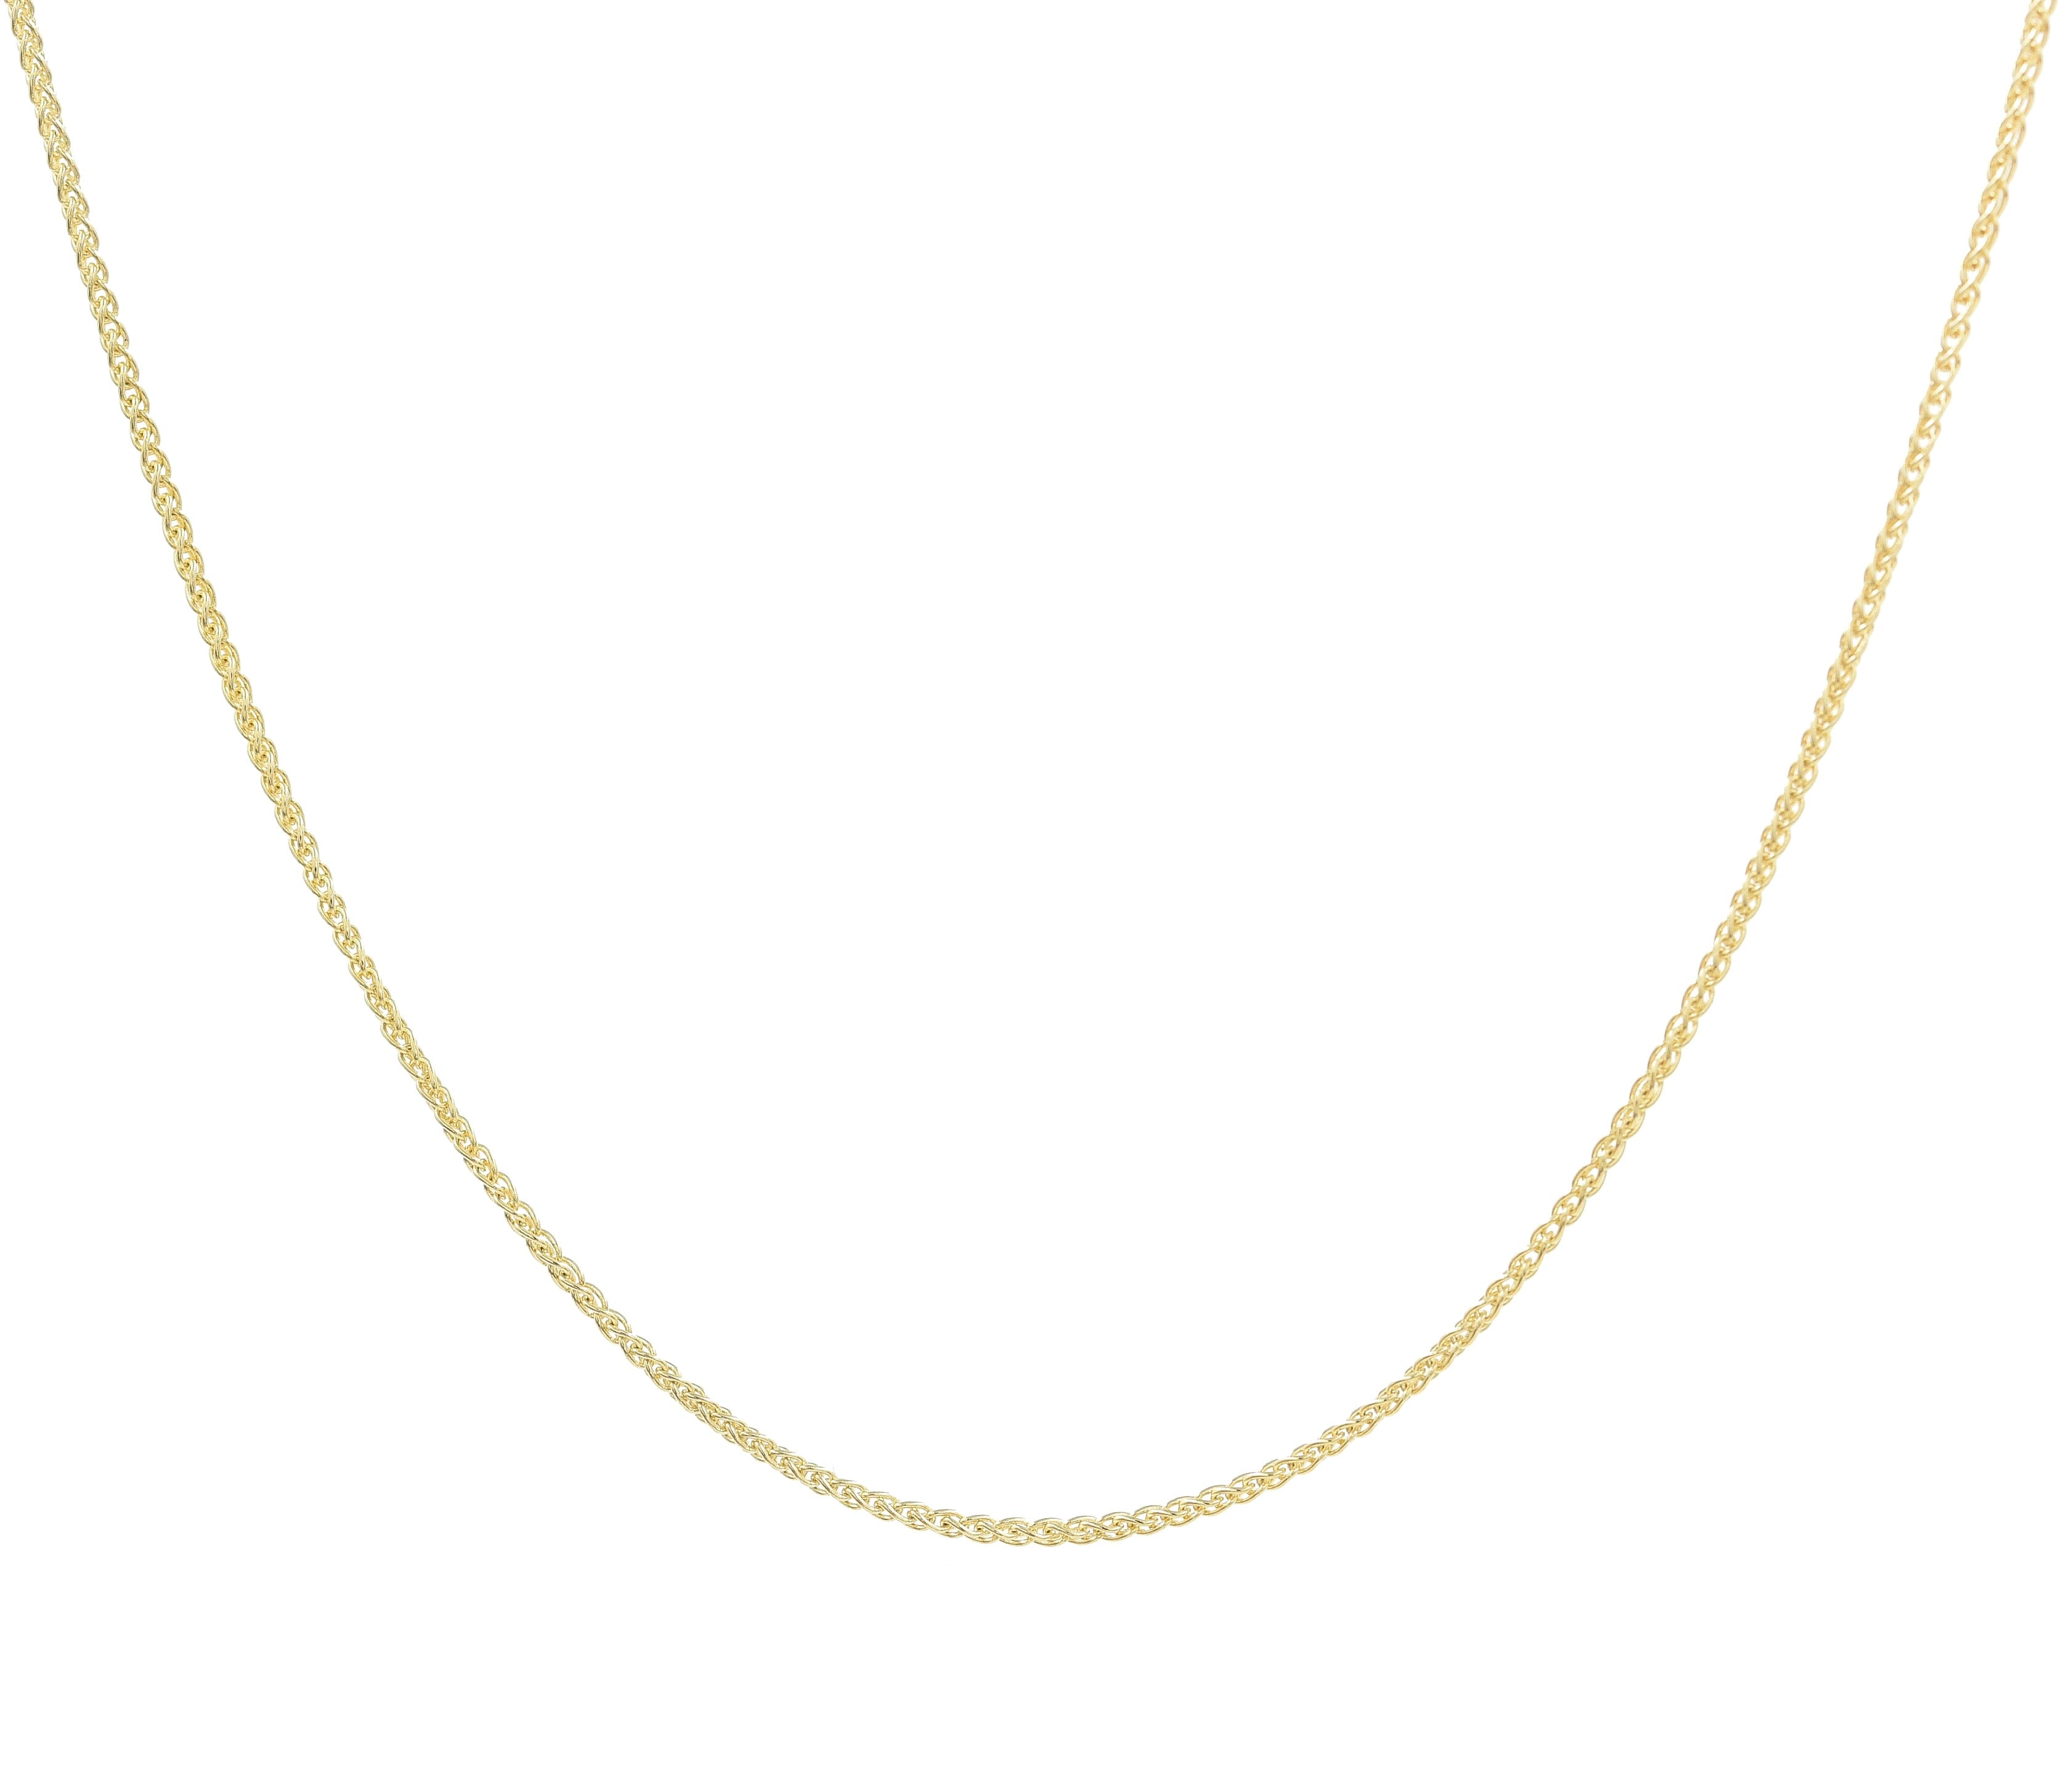 Braid Chain Necklace Necklaces - BONDEYE JEWELRY ®